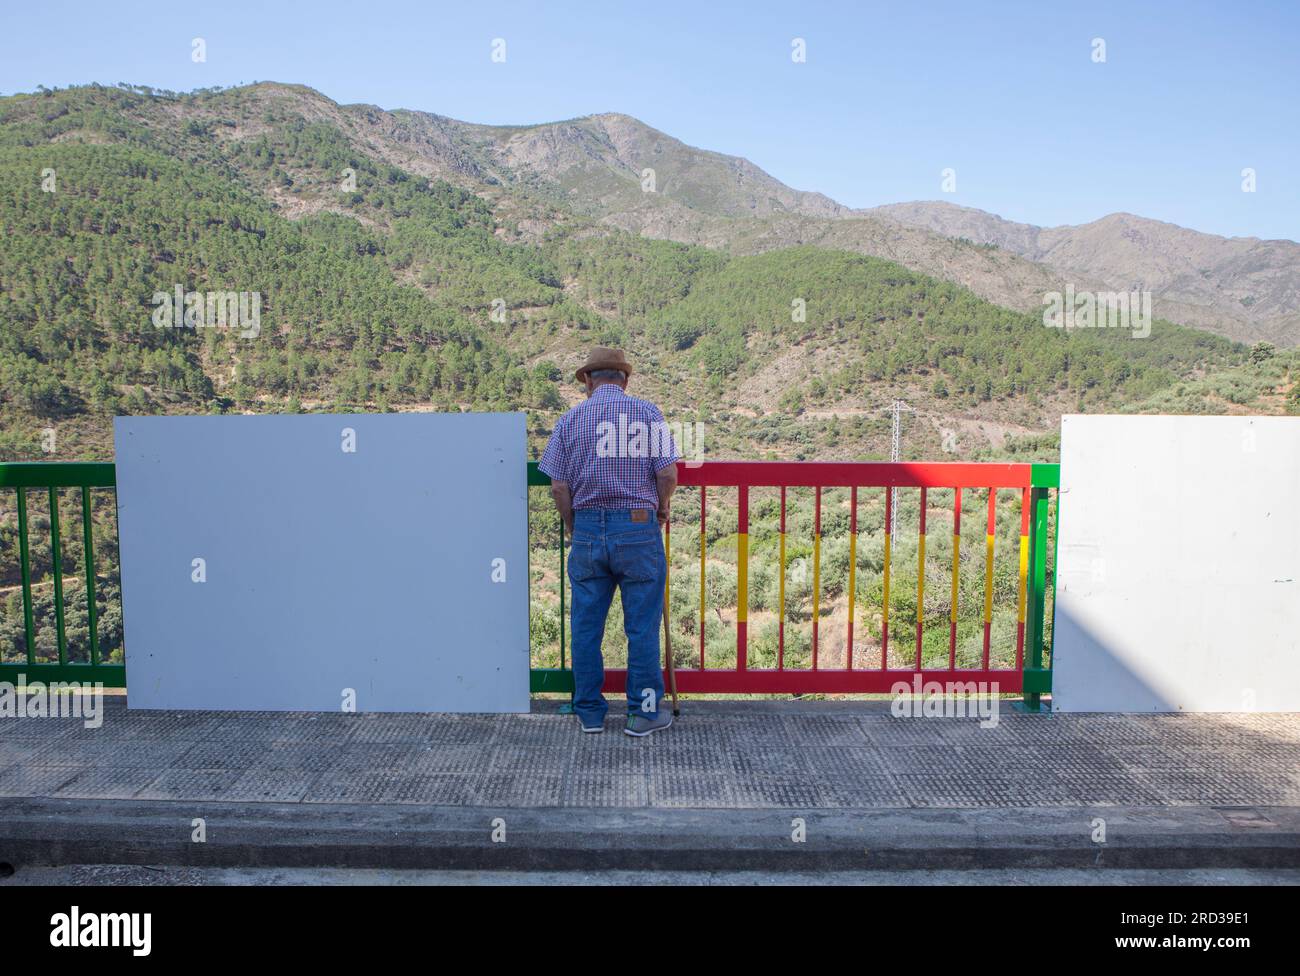 Homme senior contemplant le paysage montagneux du point de vue. Casares de las Hurdes, Caceres, Estrémadure, Espagne Banque D'Images